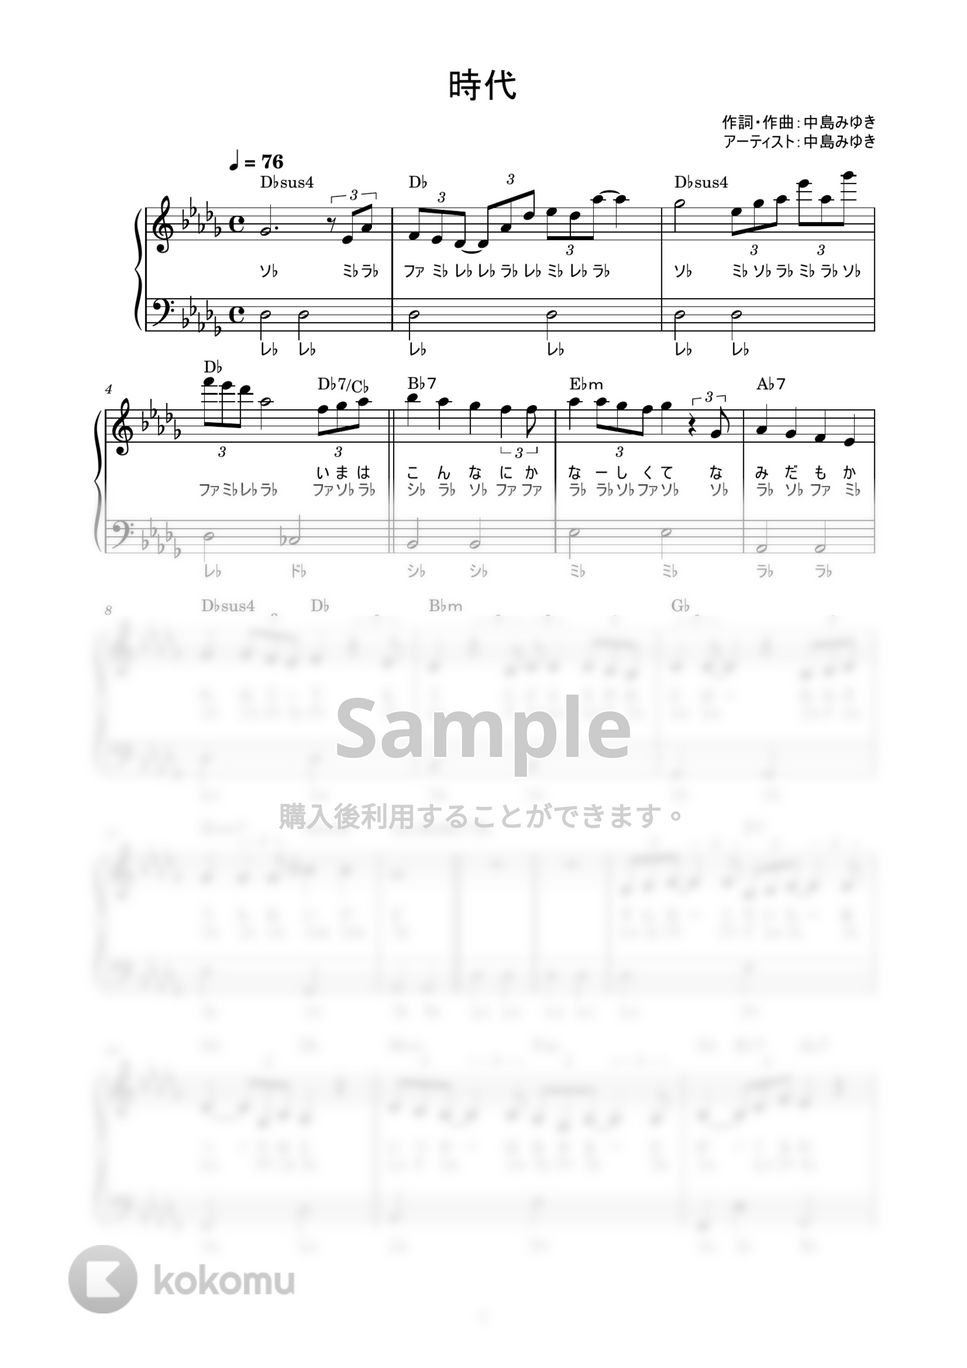 中島みゆき - 時代 (かんたん / 歌詞付き / ドレミ付き / 初心者) by piano.tokyo